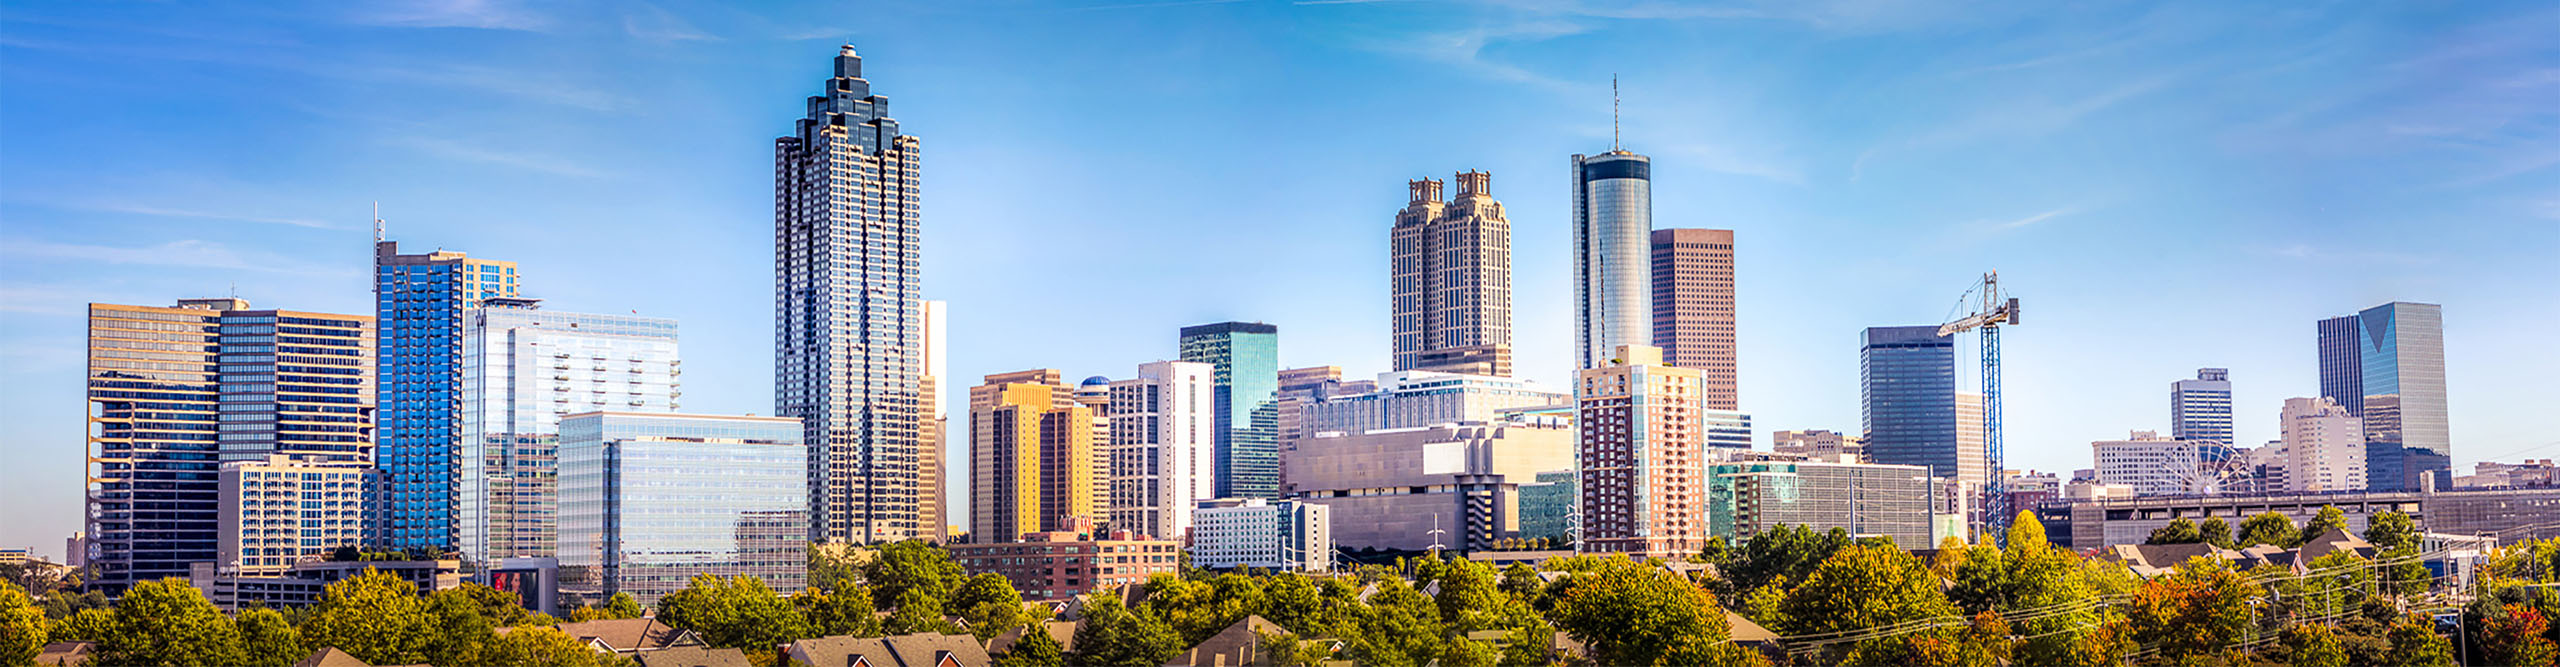 Atlanta city skyline on a clear sunny day, USA